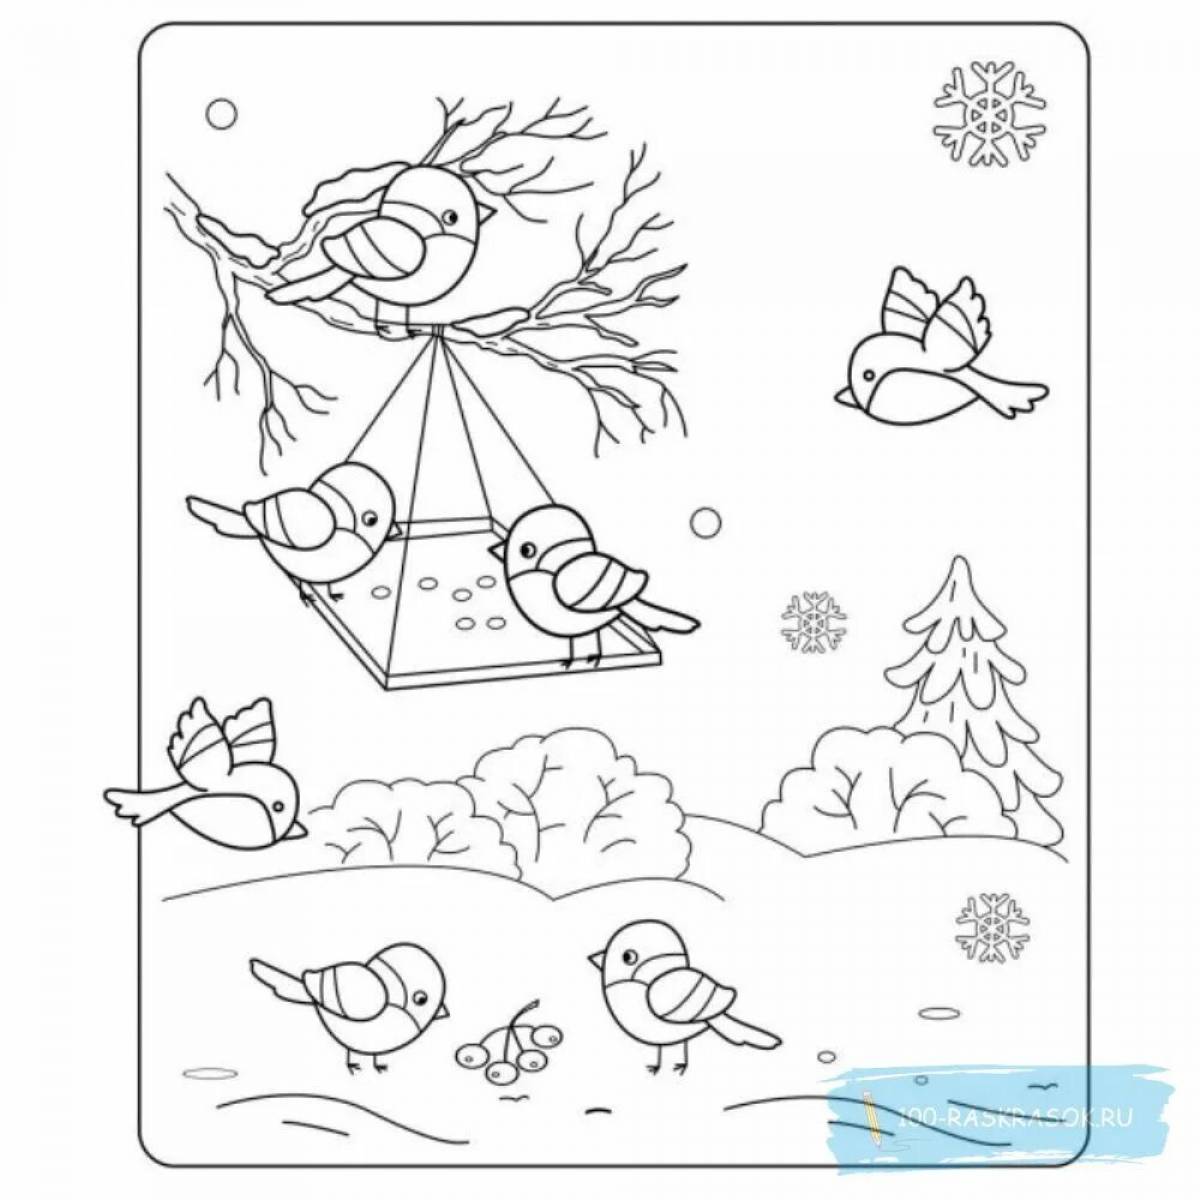 Оживленные дети кормят птиц зимой у кормушки